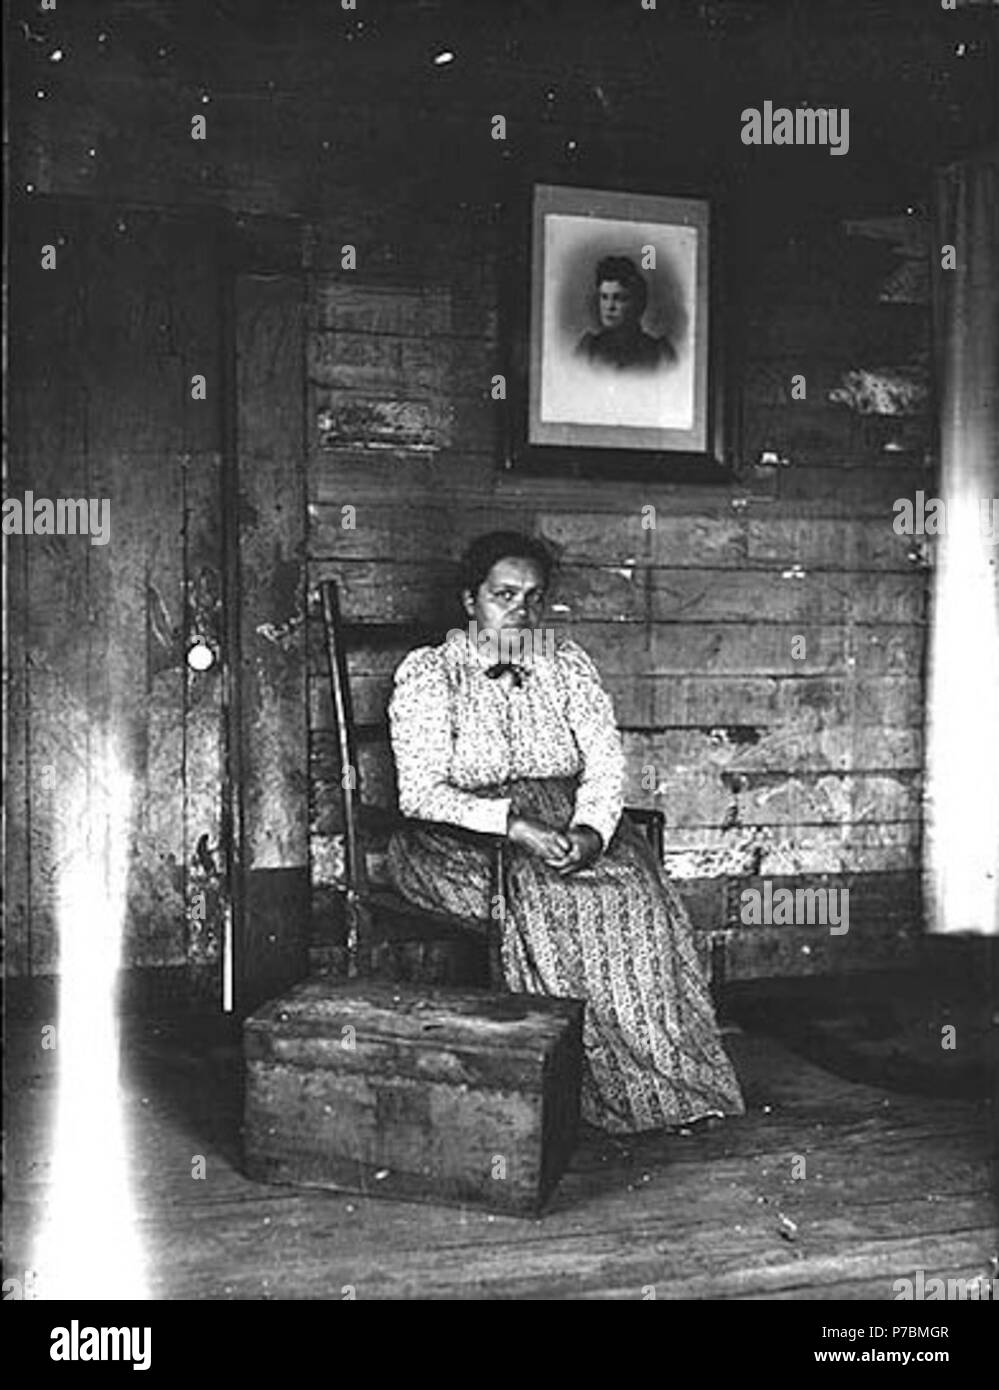 Inglés: mujer no identificada sentado en una silla, Washington, ca. 1905 .  Inglés: Interior de la habitación. Mujer sentada en la silla junto al  pecho. Enmarcado retrato de mujer en la